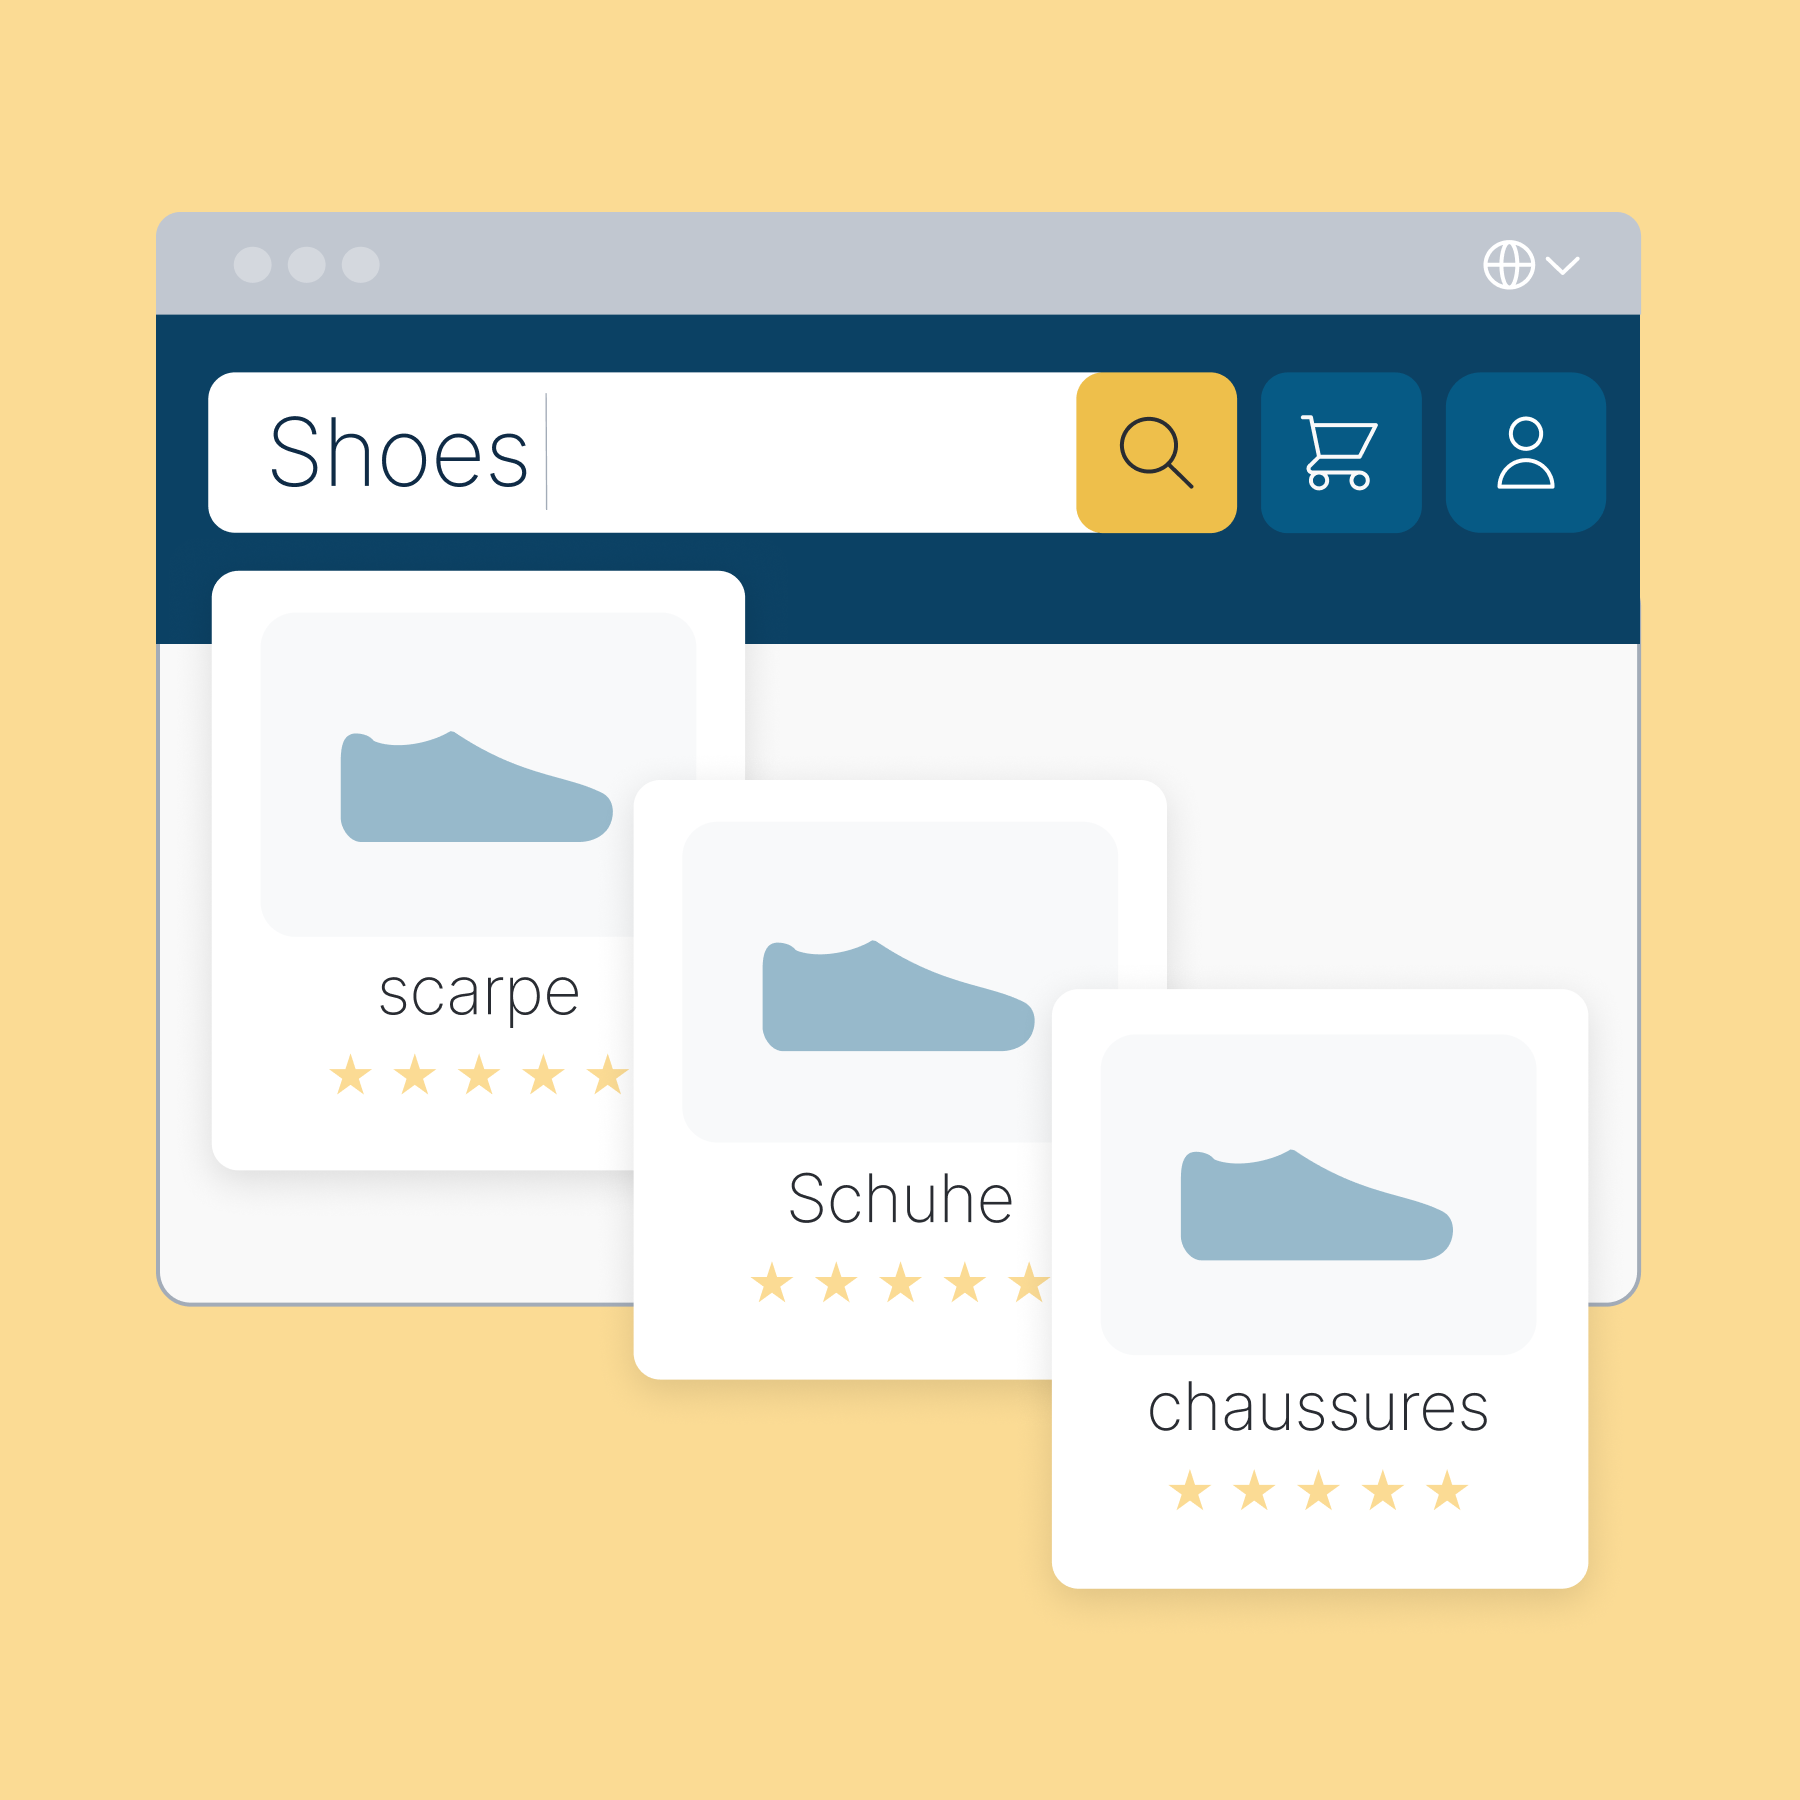 Abbildung von Website-Suchergebnissen für „Schuhe“ in mehreren Sprachen